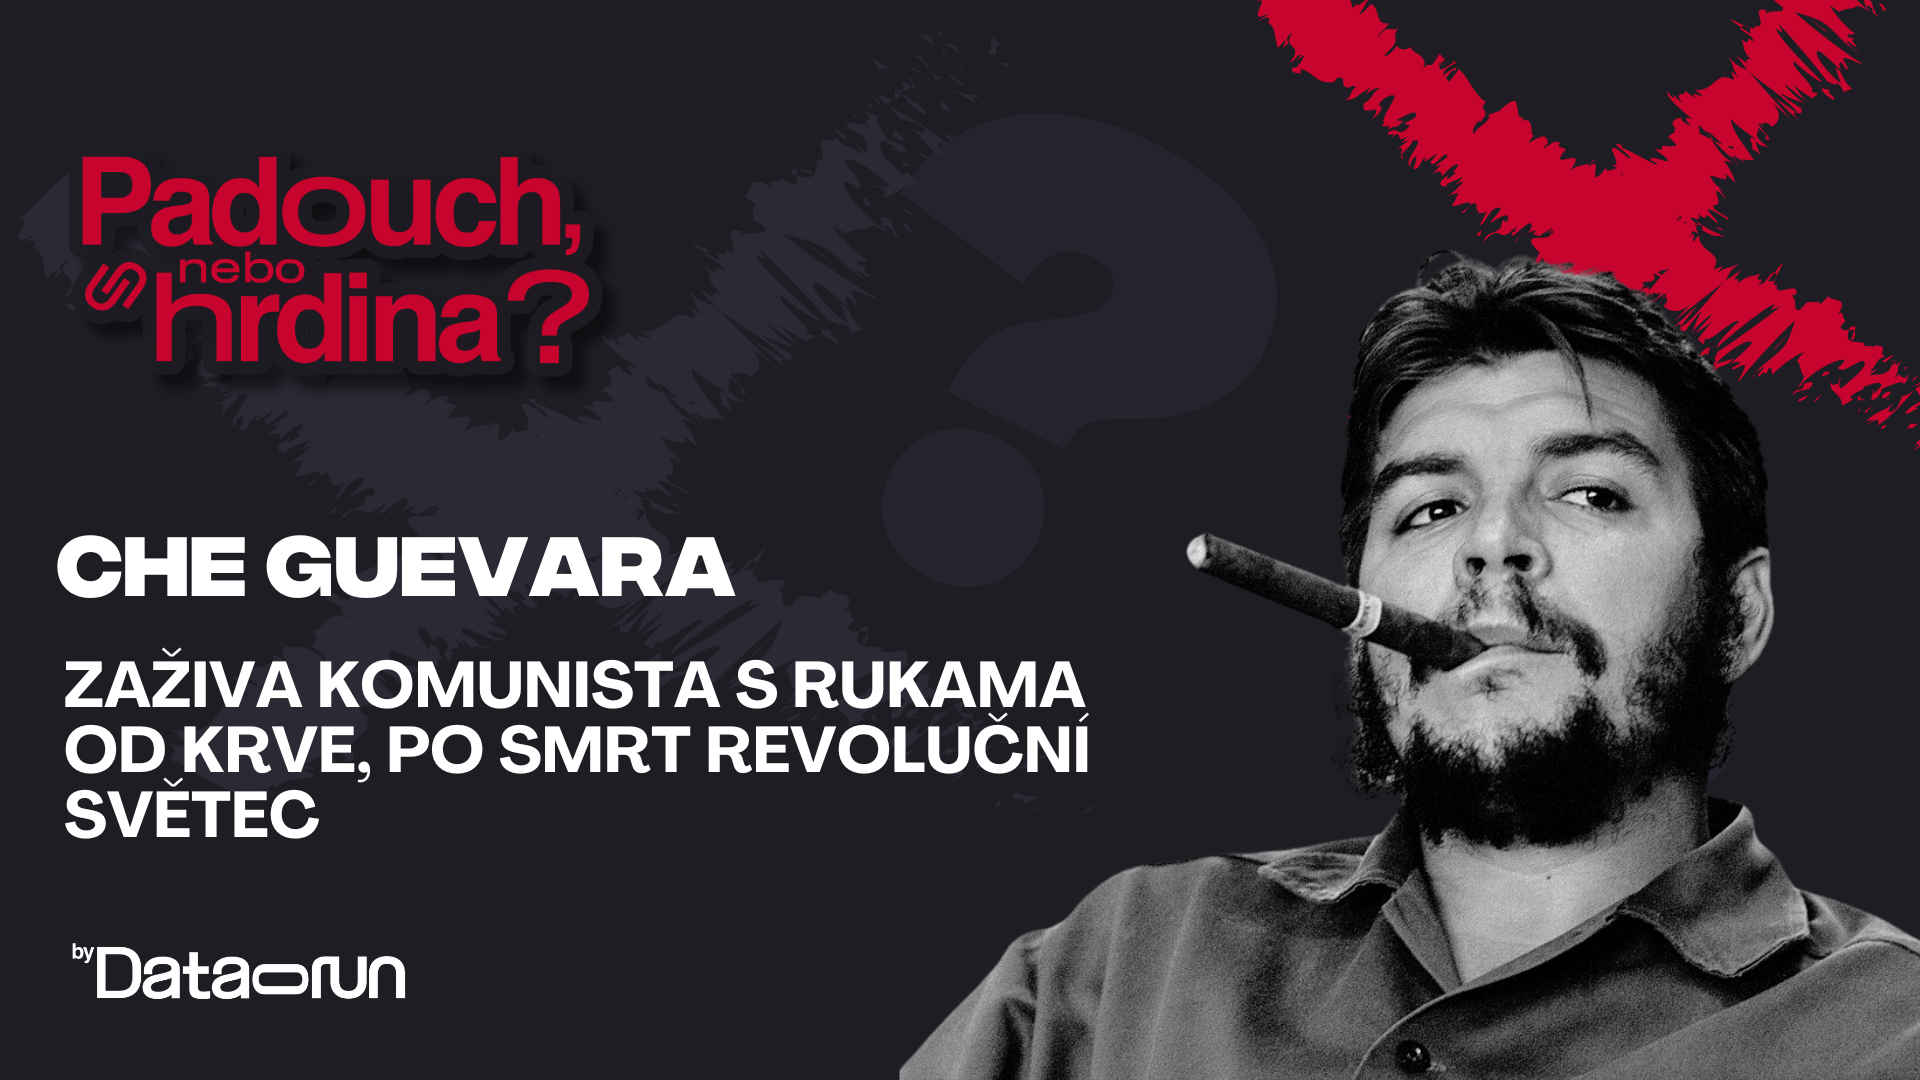 Preview of Padouch, nebo hrdina? #42- Che Guevara: Zaživa komunista s rukama od krve, po smrti revoluční světec